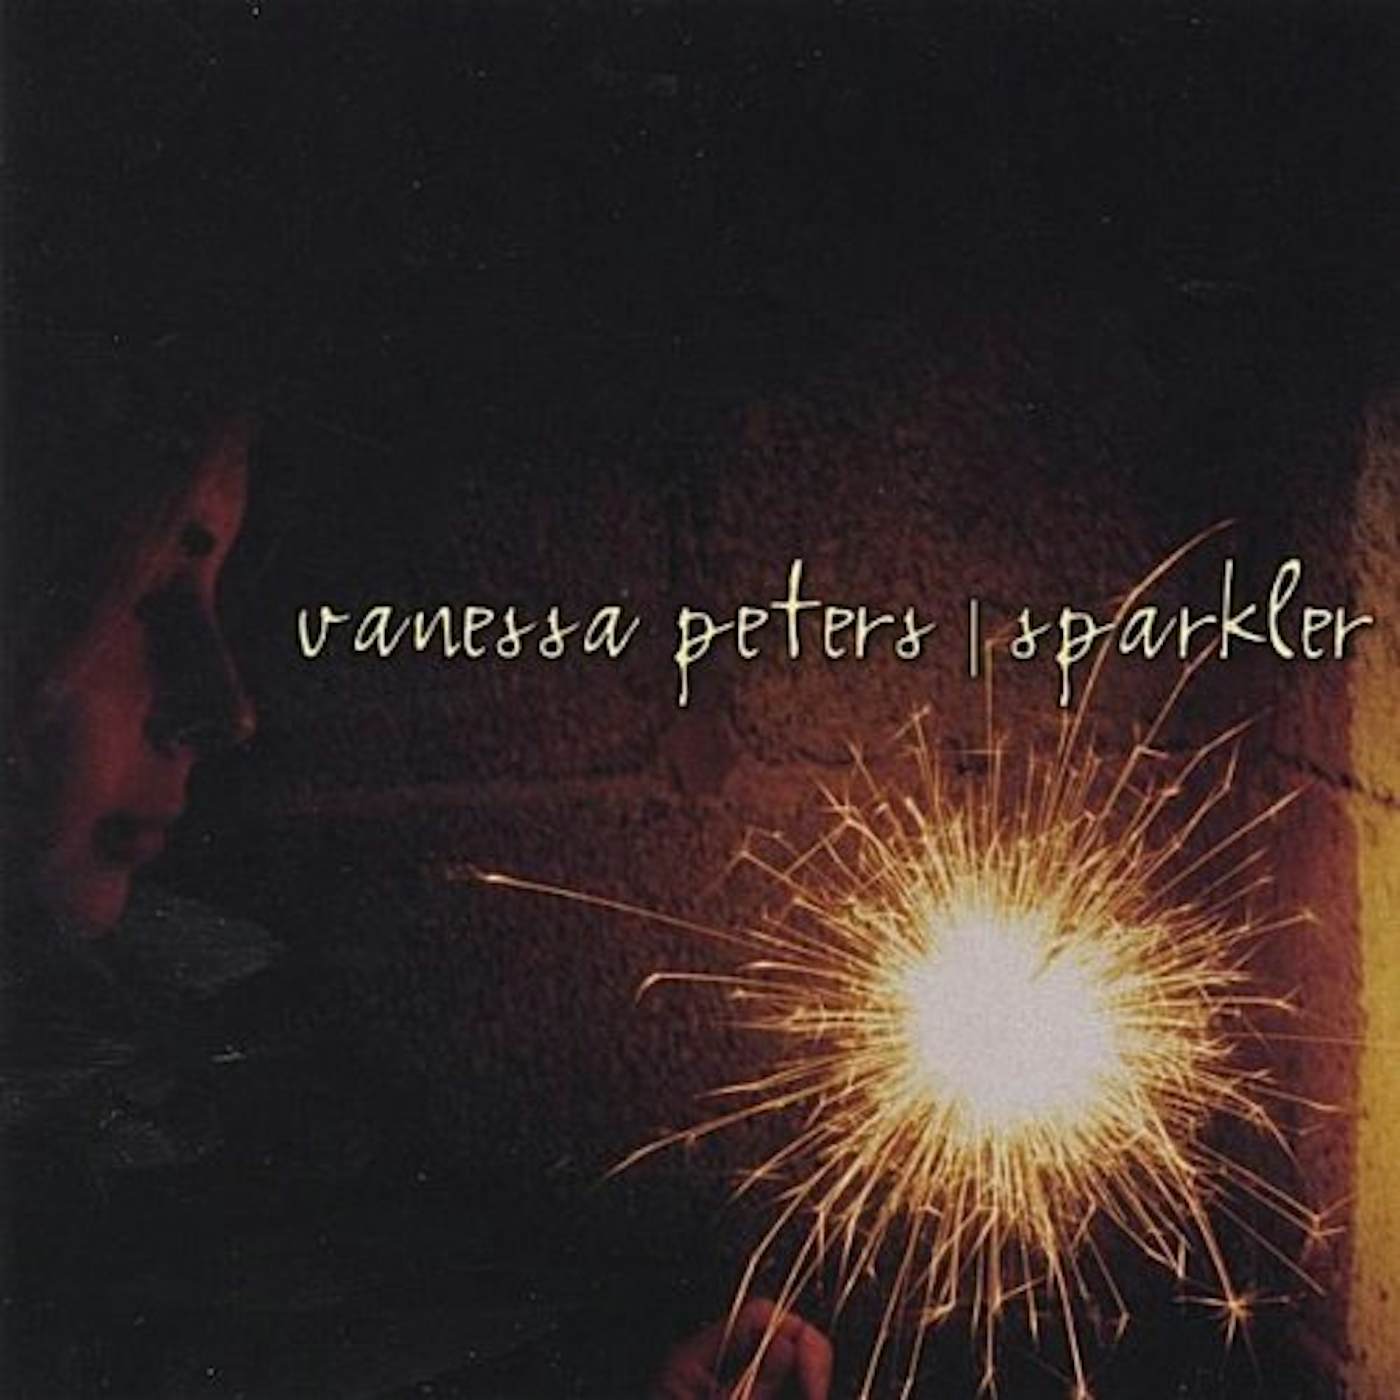 Vanessa Peters SPARKLER CD